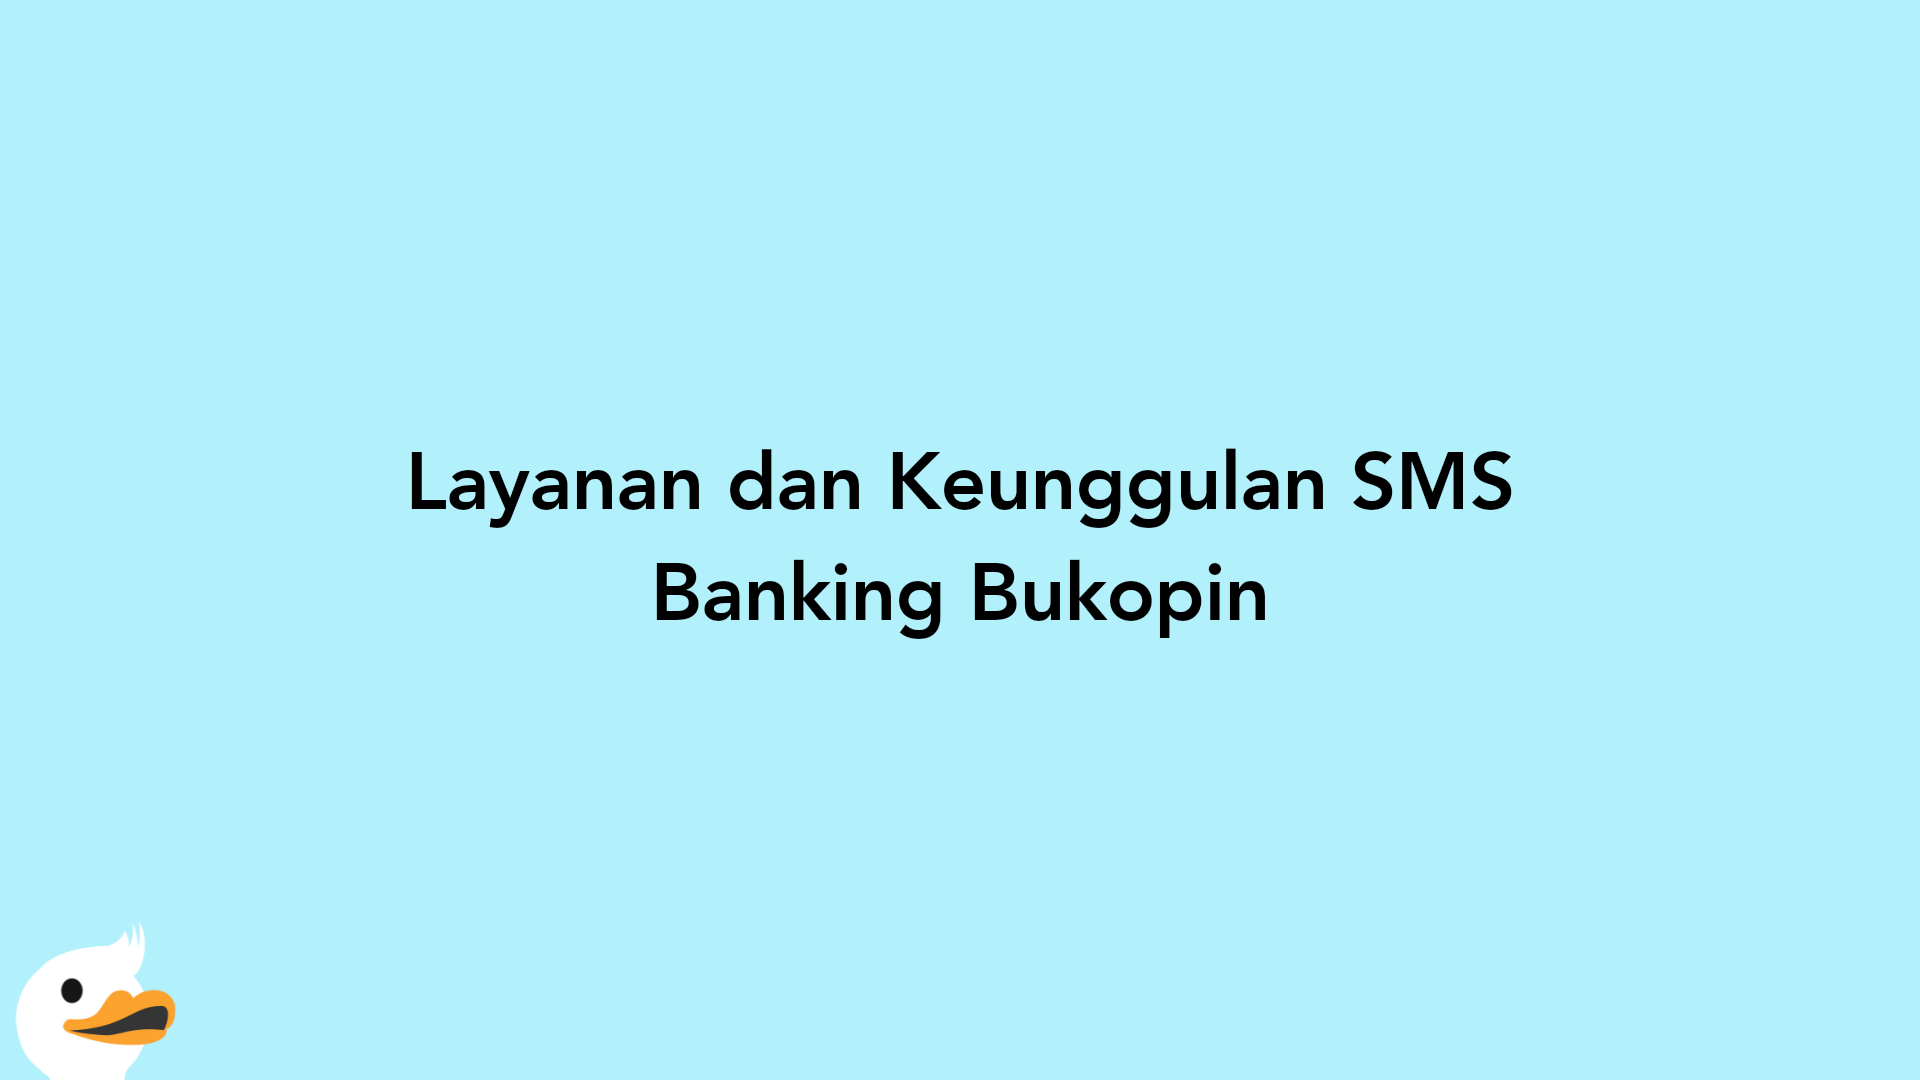 Layanan dan Keunggulan SMS Banking Bukopin